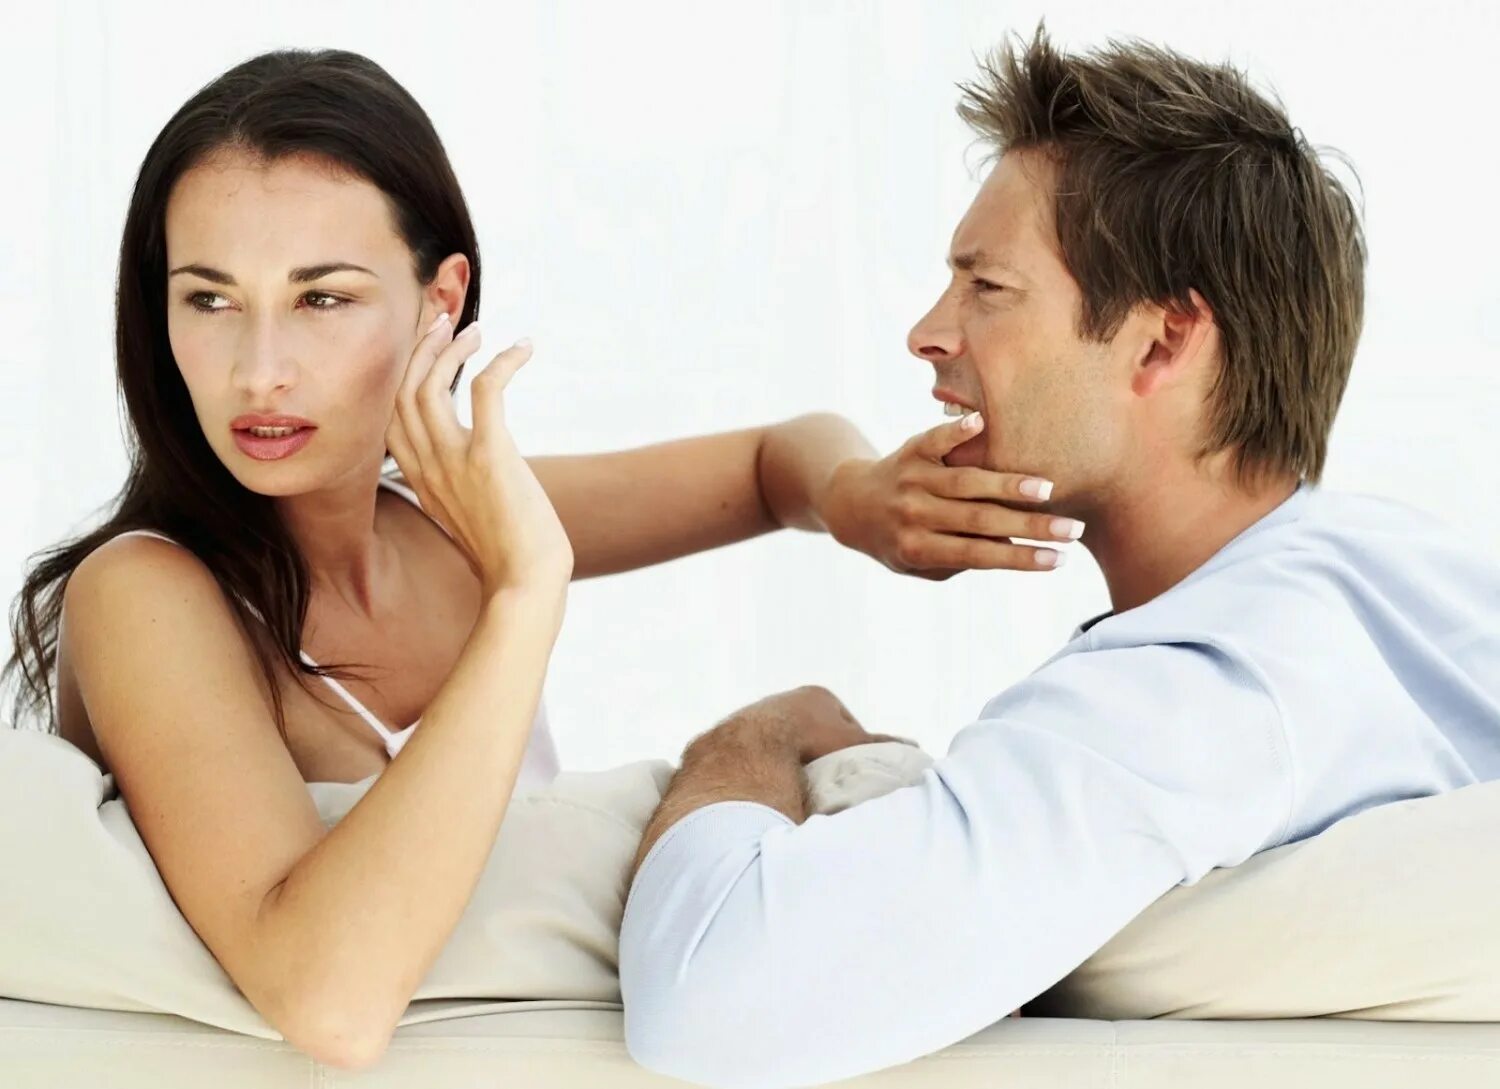 Мужчина и женщина ссорятся. Психология отношений между мужчиной и женщиной. Ссооа мужчины и женщин. Взаимоотношения мужчины и женщины.